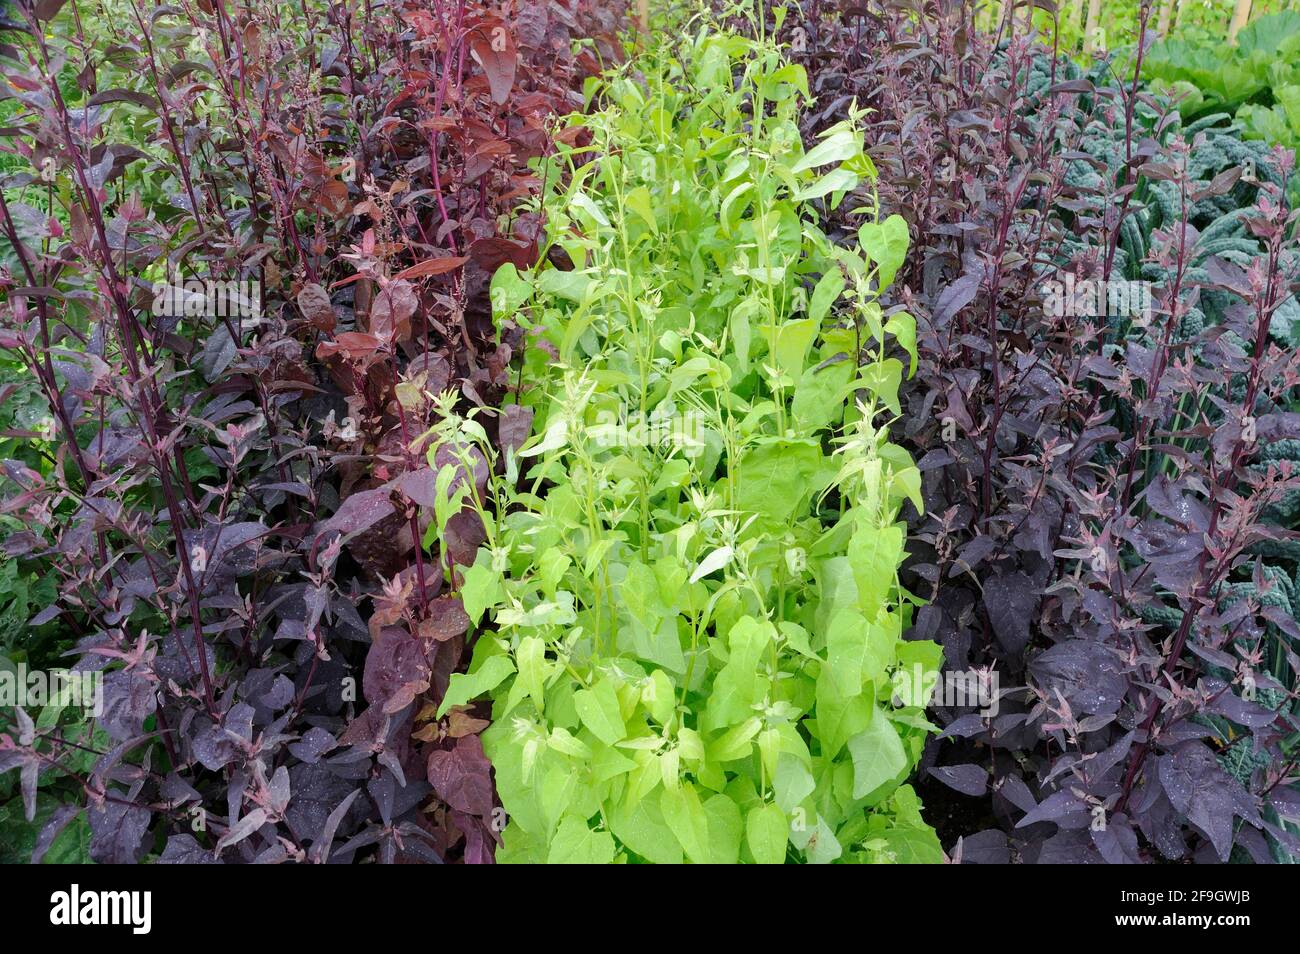 Garden lettuce, Spanish lettuce (Atriplex hortensis) Stock Photo